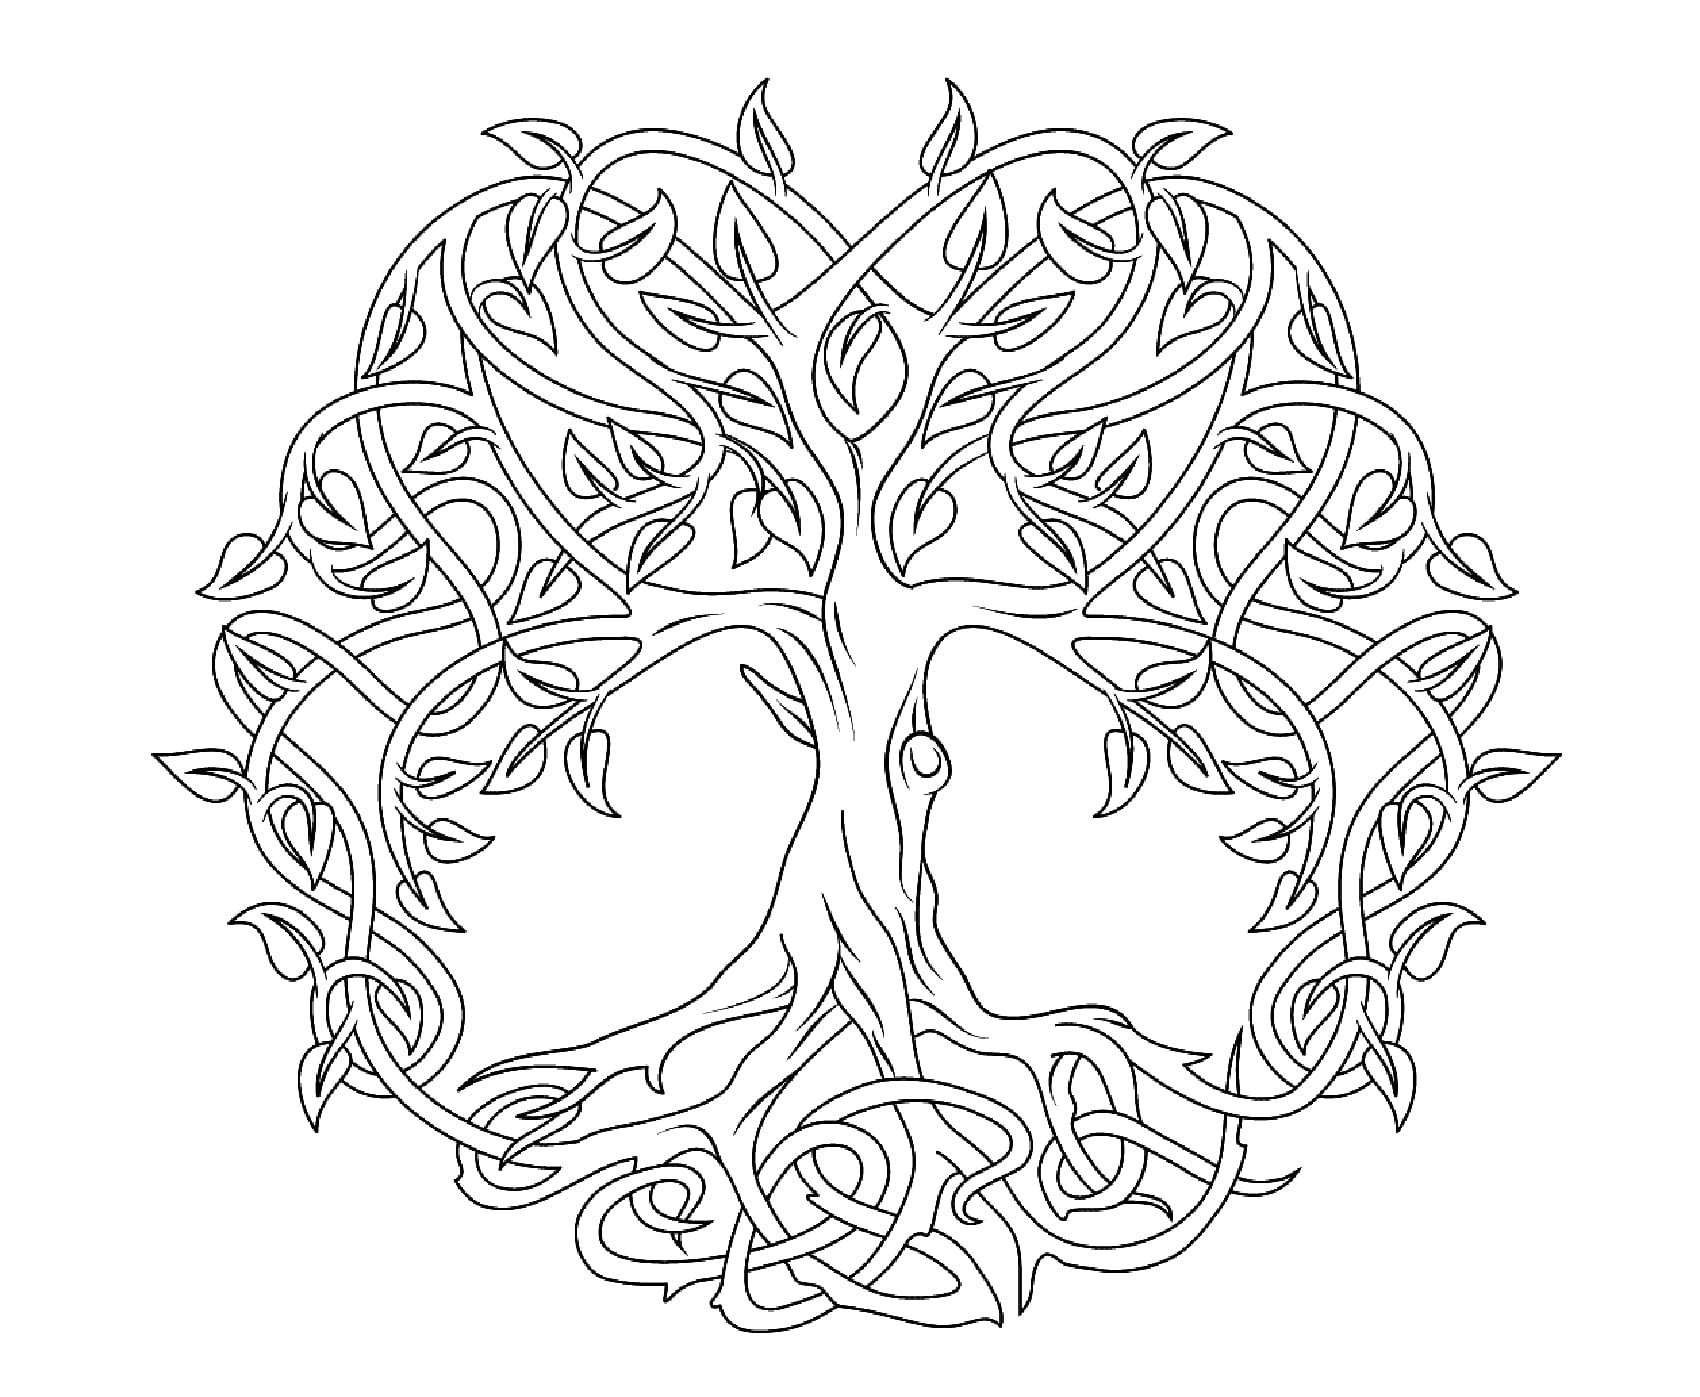 El Árbol de la vida (Arte celta). El árbol de la vida celta representa el concepto de las fuerzas de la naturaleza que convergen para crear armonía. Estos árboles eran tan altos y extensos que podían formar un bosque entero con sus ramas.